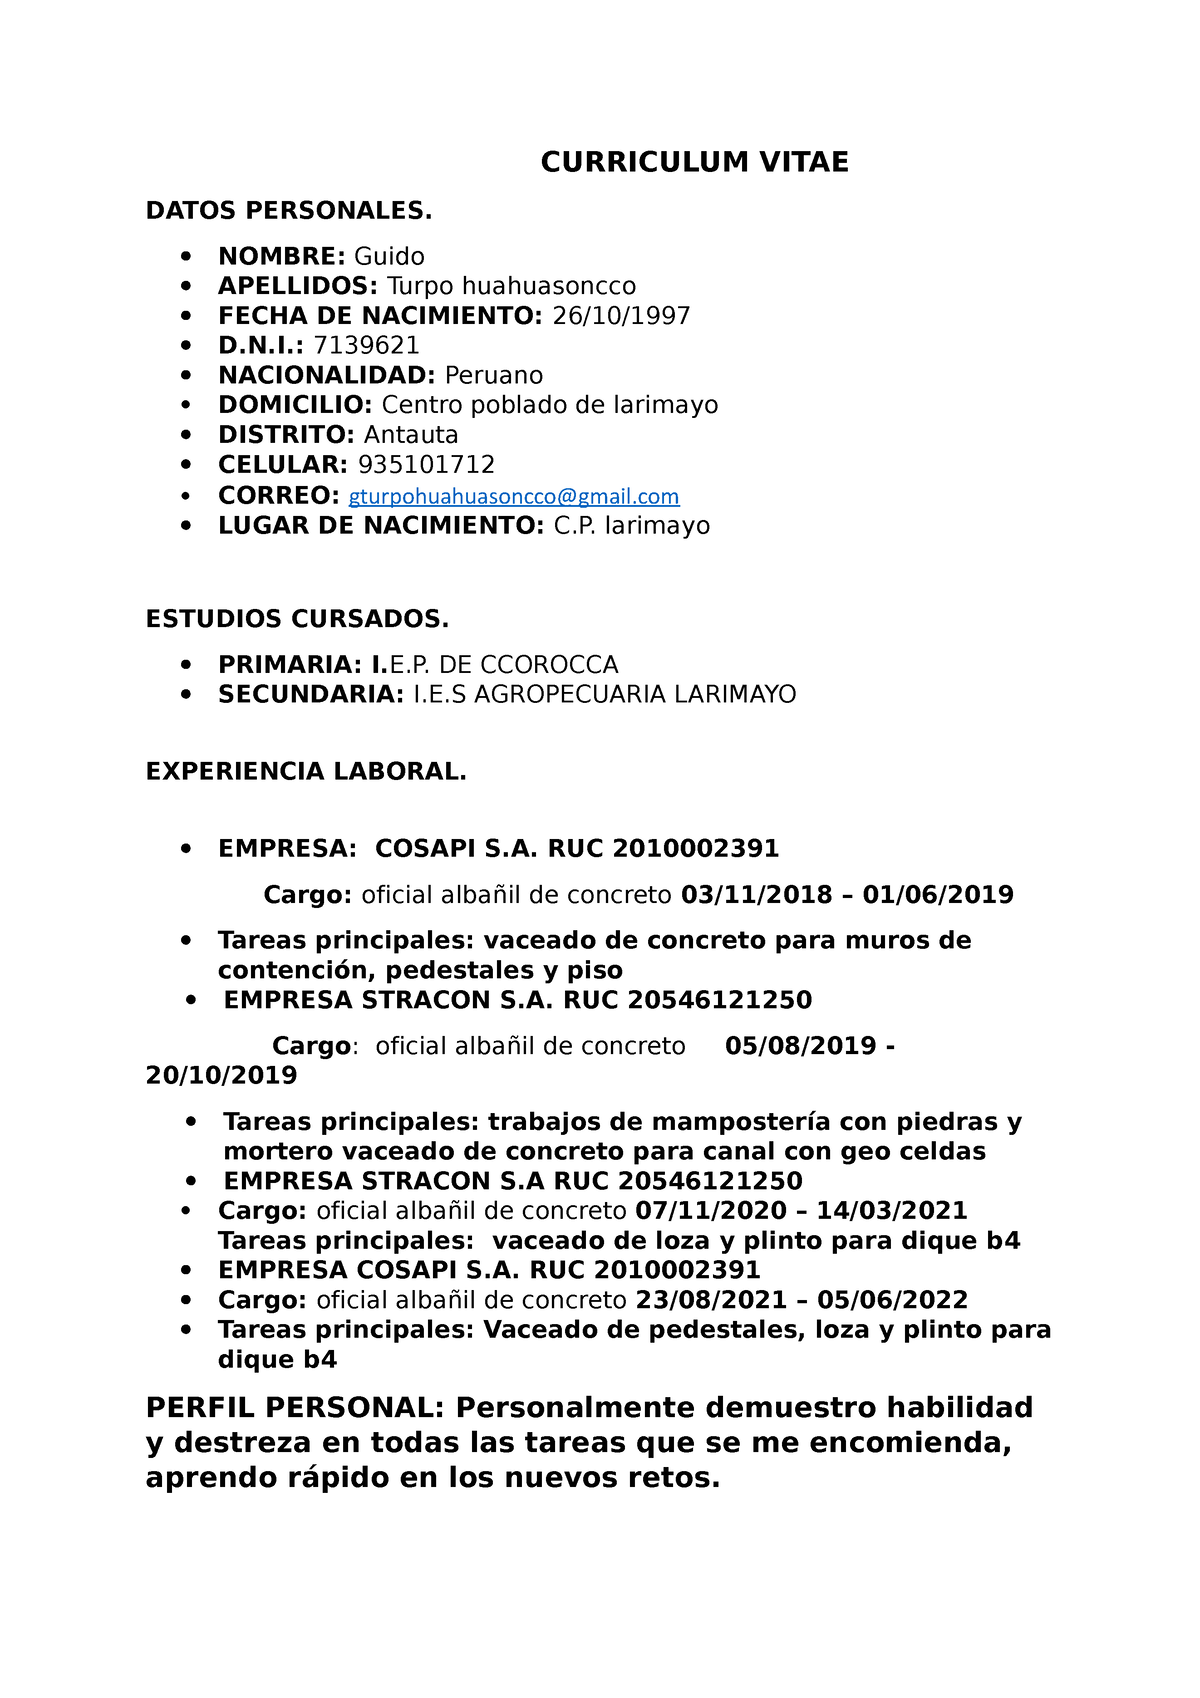 Curriculum Vitaedocx Guido Turpo Curriculum Vitae Datos Personales